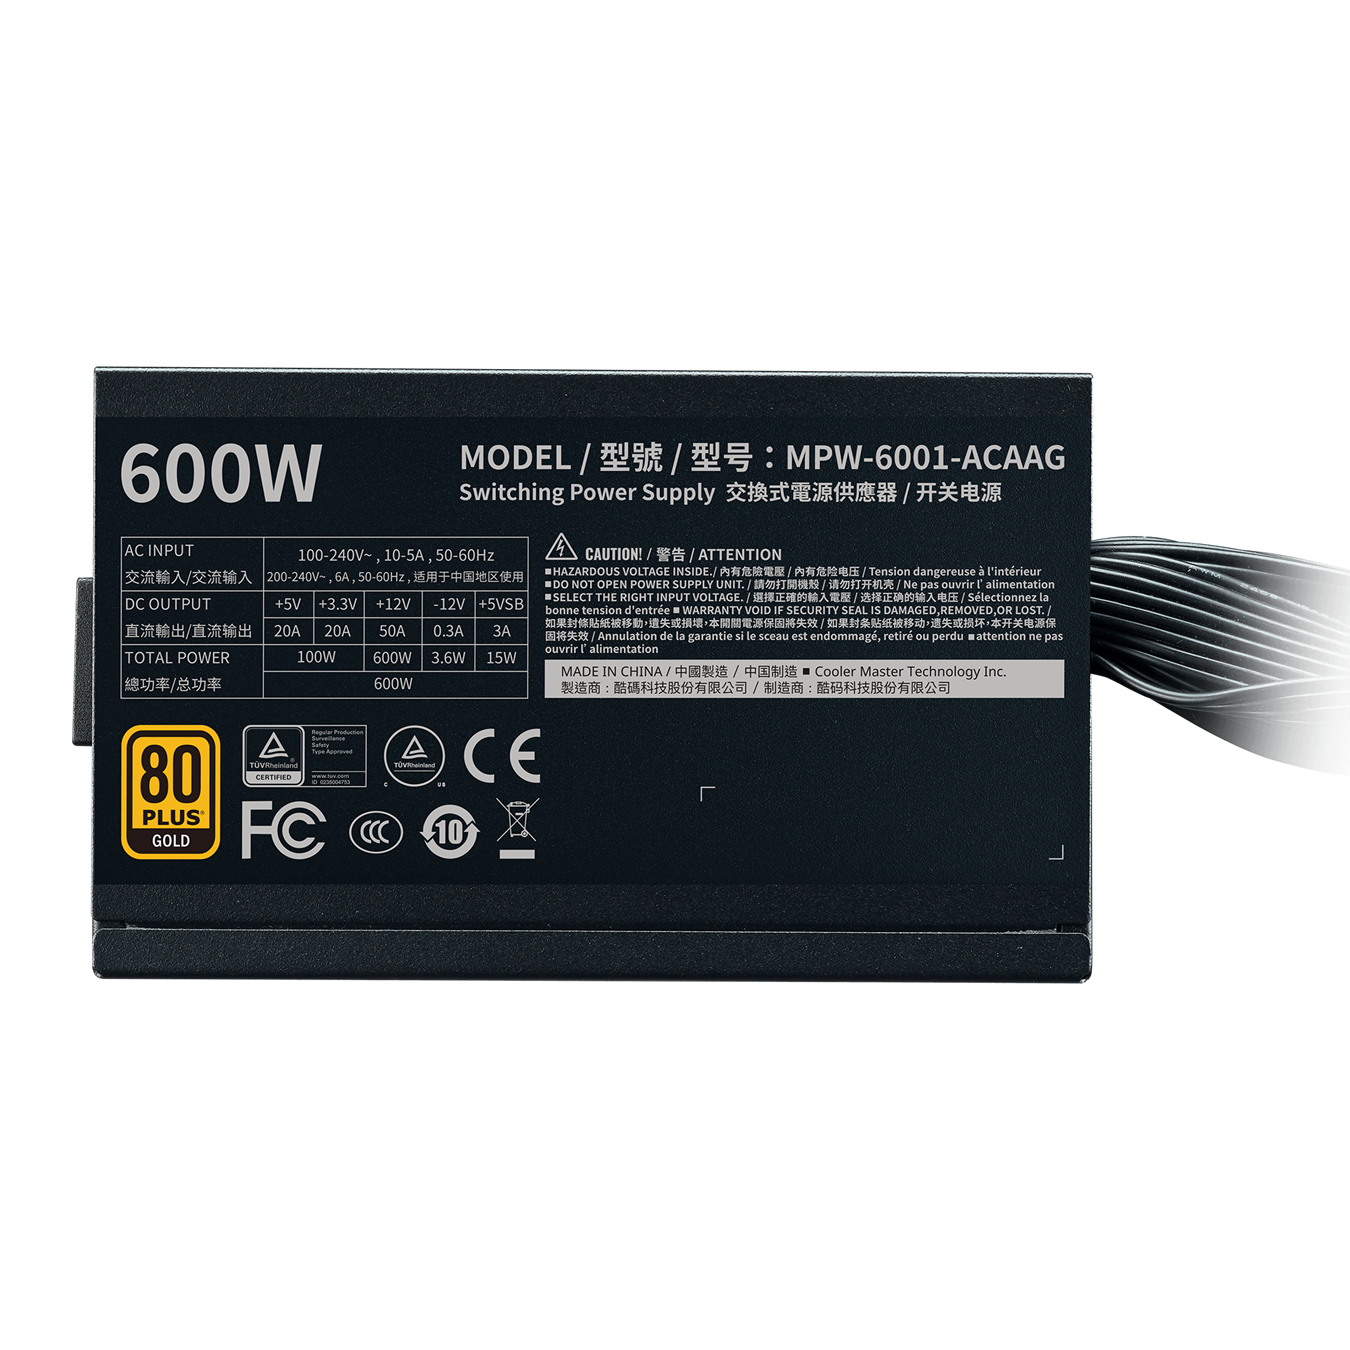 G600 Gold - 5 Year Warranty